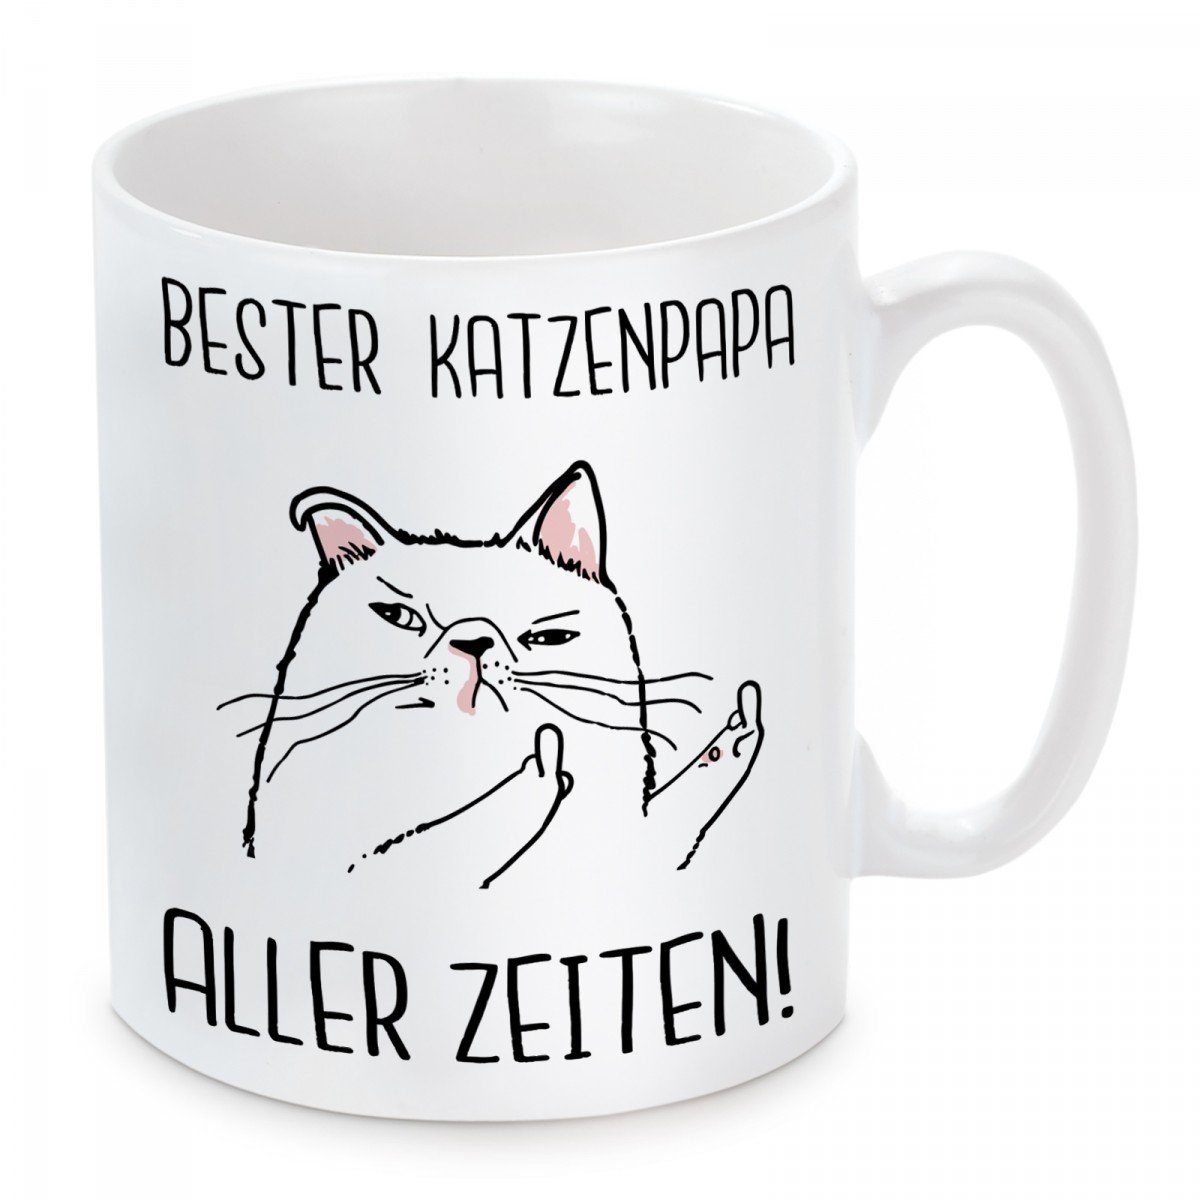 Herzbotschaft Tasse Kaffeebecher mit Motiv Bester Katzenpapa aller Zeiten!, Keramik, Kaffeetasse spülmaschinenfest und mikrowellengeeignet